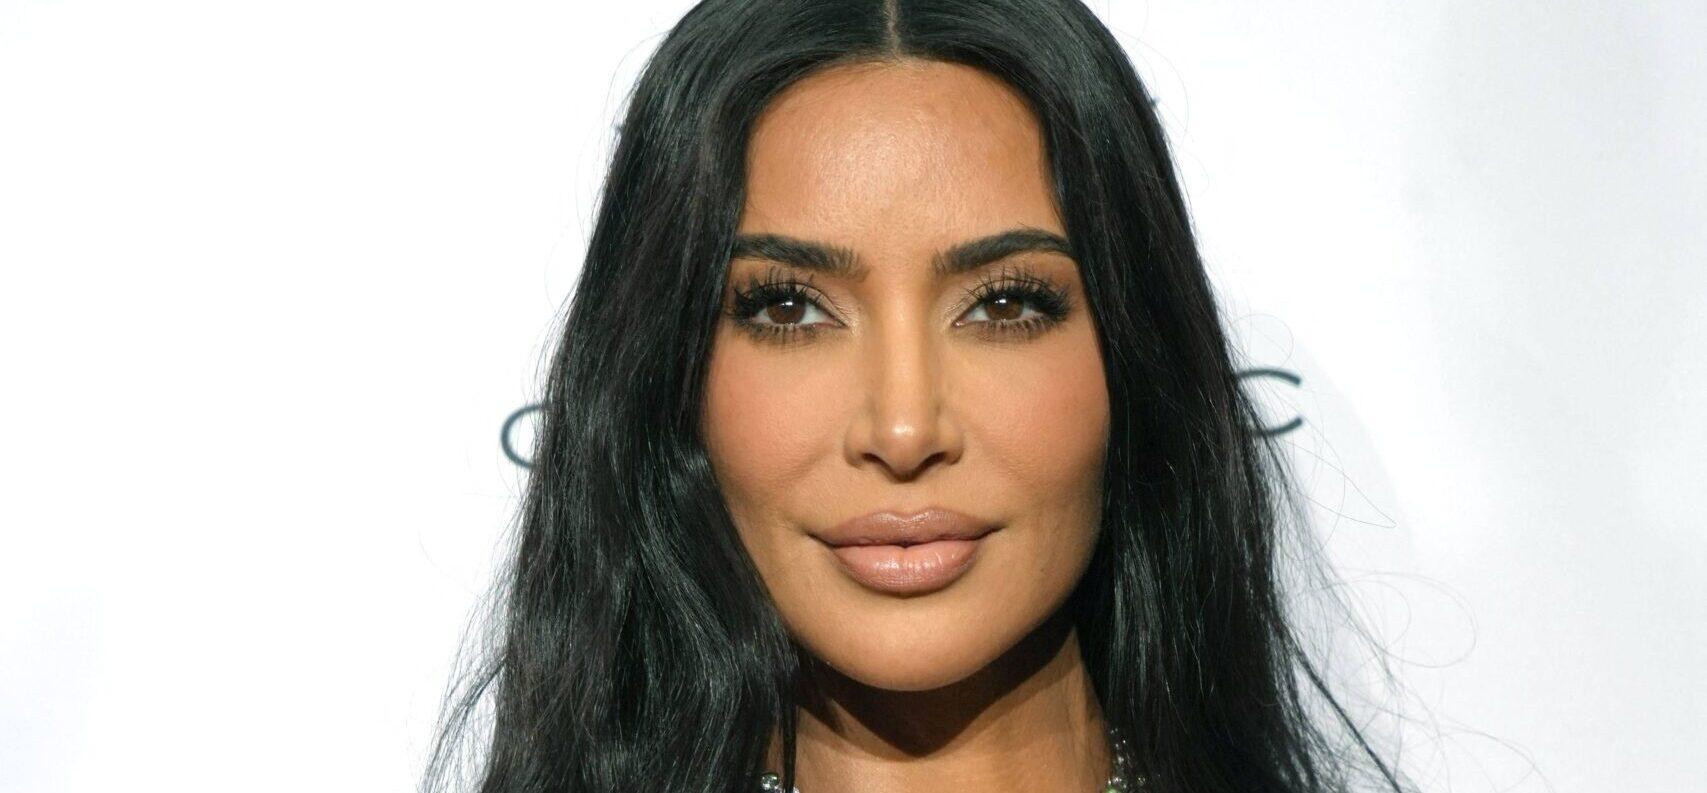 Kim Kardashian Breaks Her Silence On Israel: ‘My Heart Is Broken’